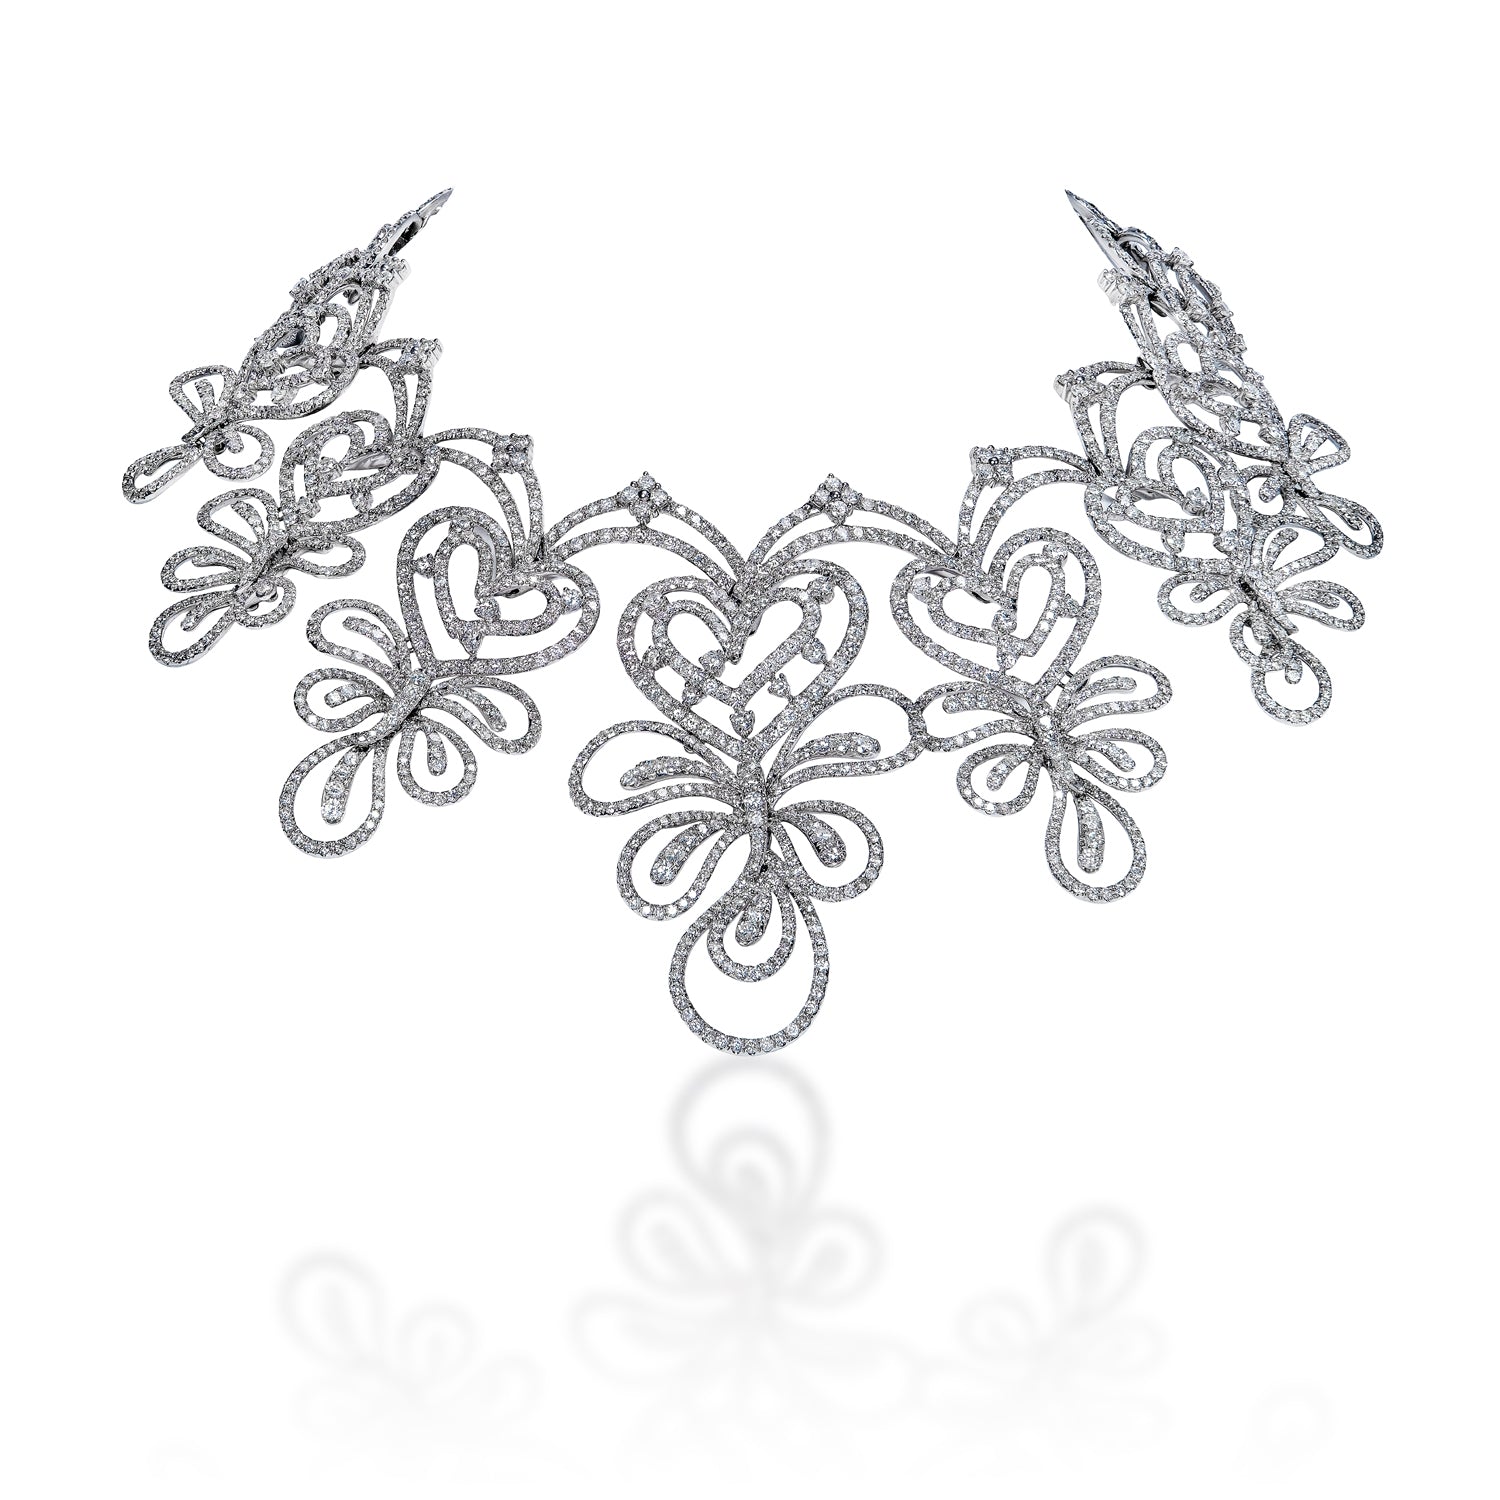 Anna 39 Carat Round Brilliant Diamond Chocker Necklace in 14k White Gold Front View